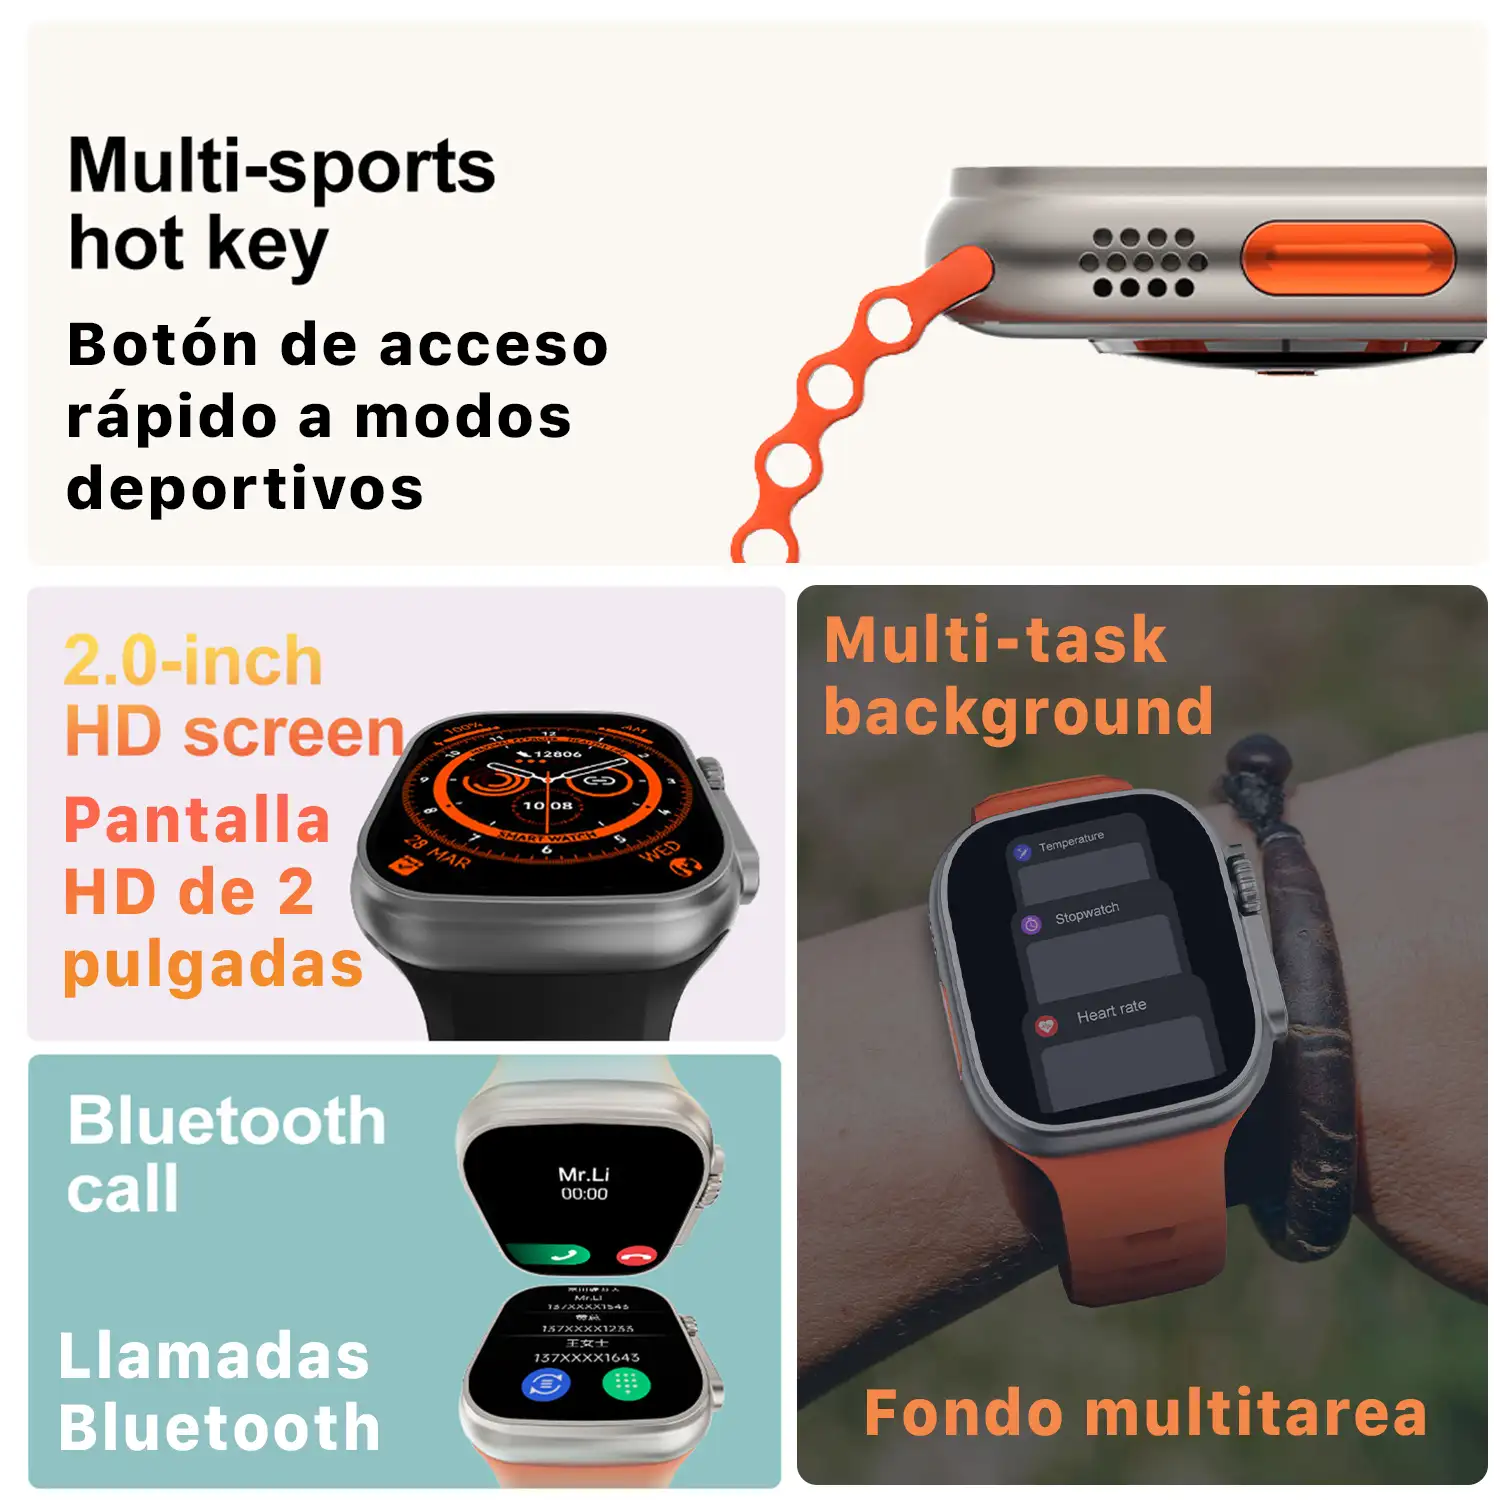  Smartwatch TRAIL DAM8 con pantalla de 2 pulgadas HR y función Always-On. Widgets personalizables. Doble correa, Sea/Trail band.